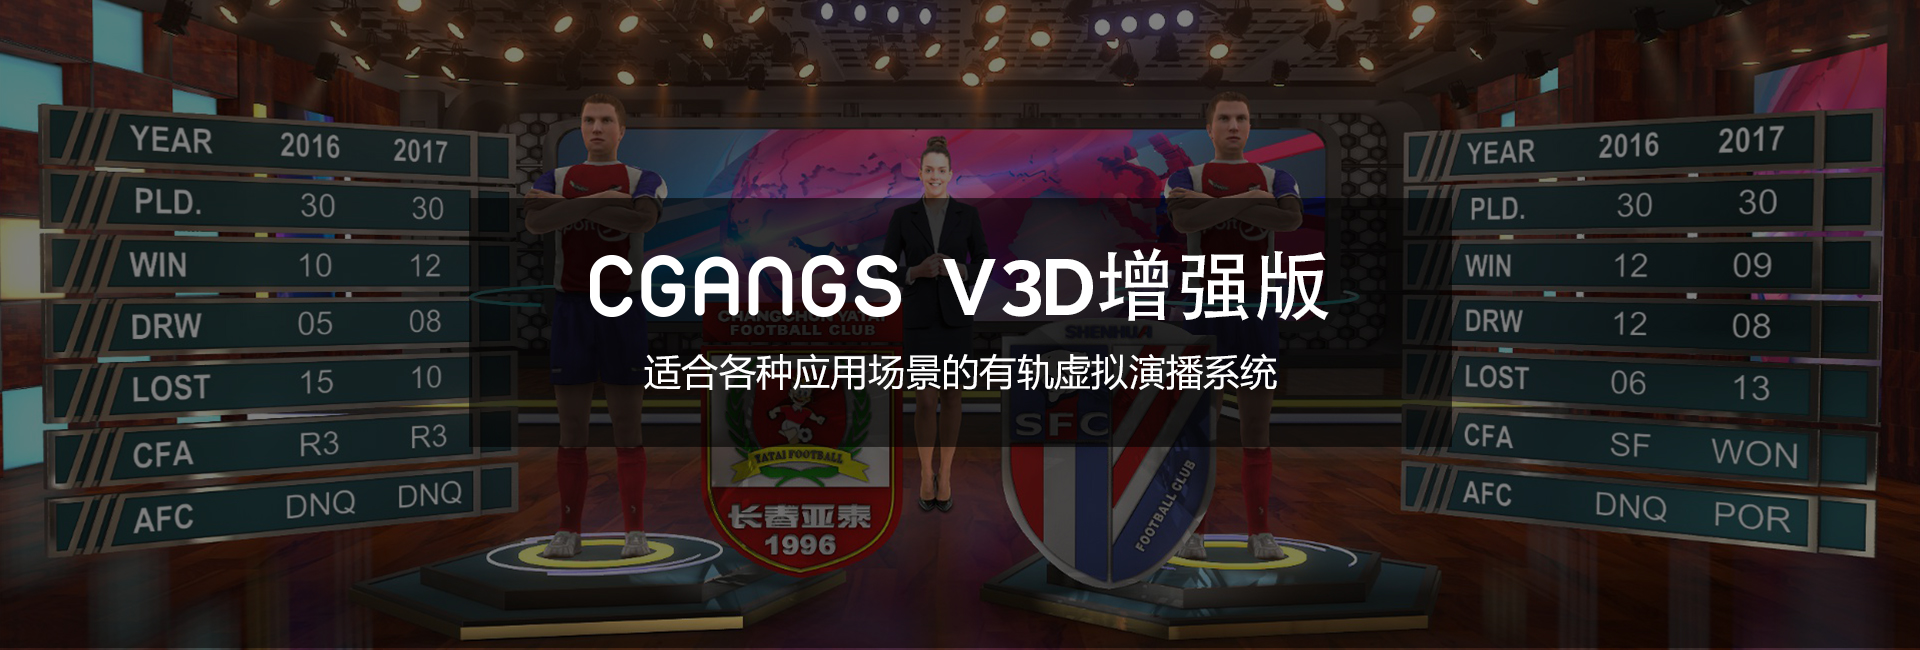 点我，了解更多关于Cgangs V3D增强版的内容